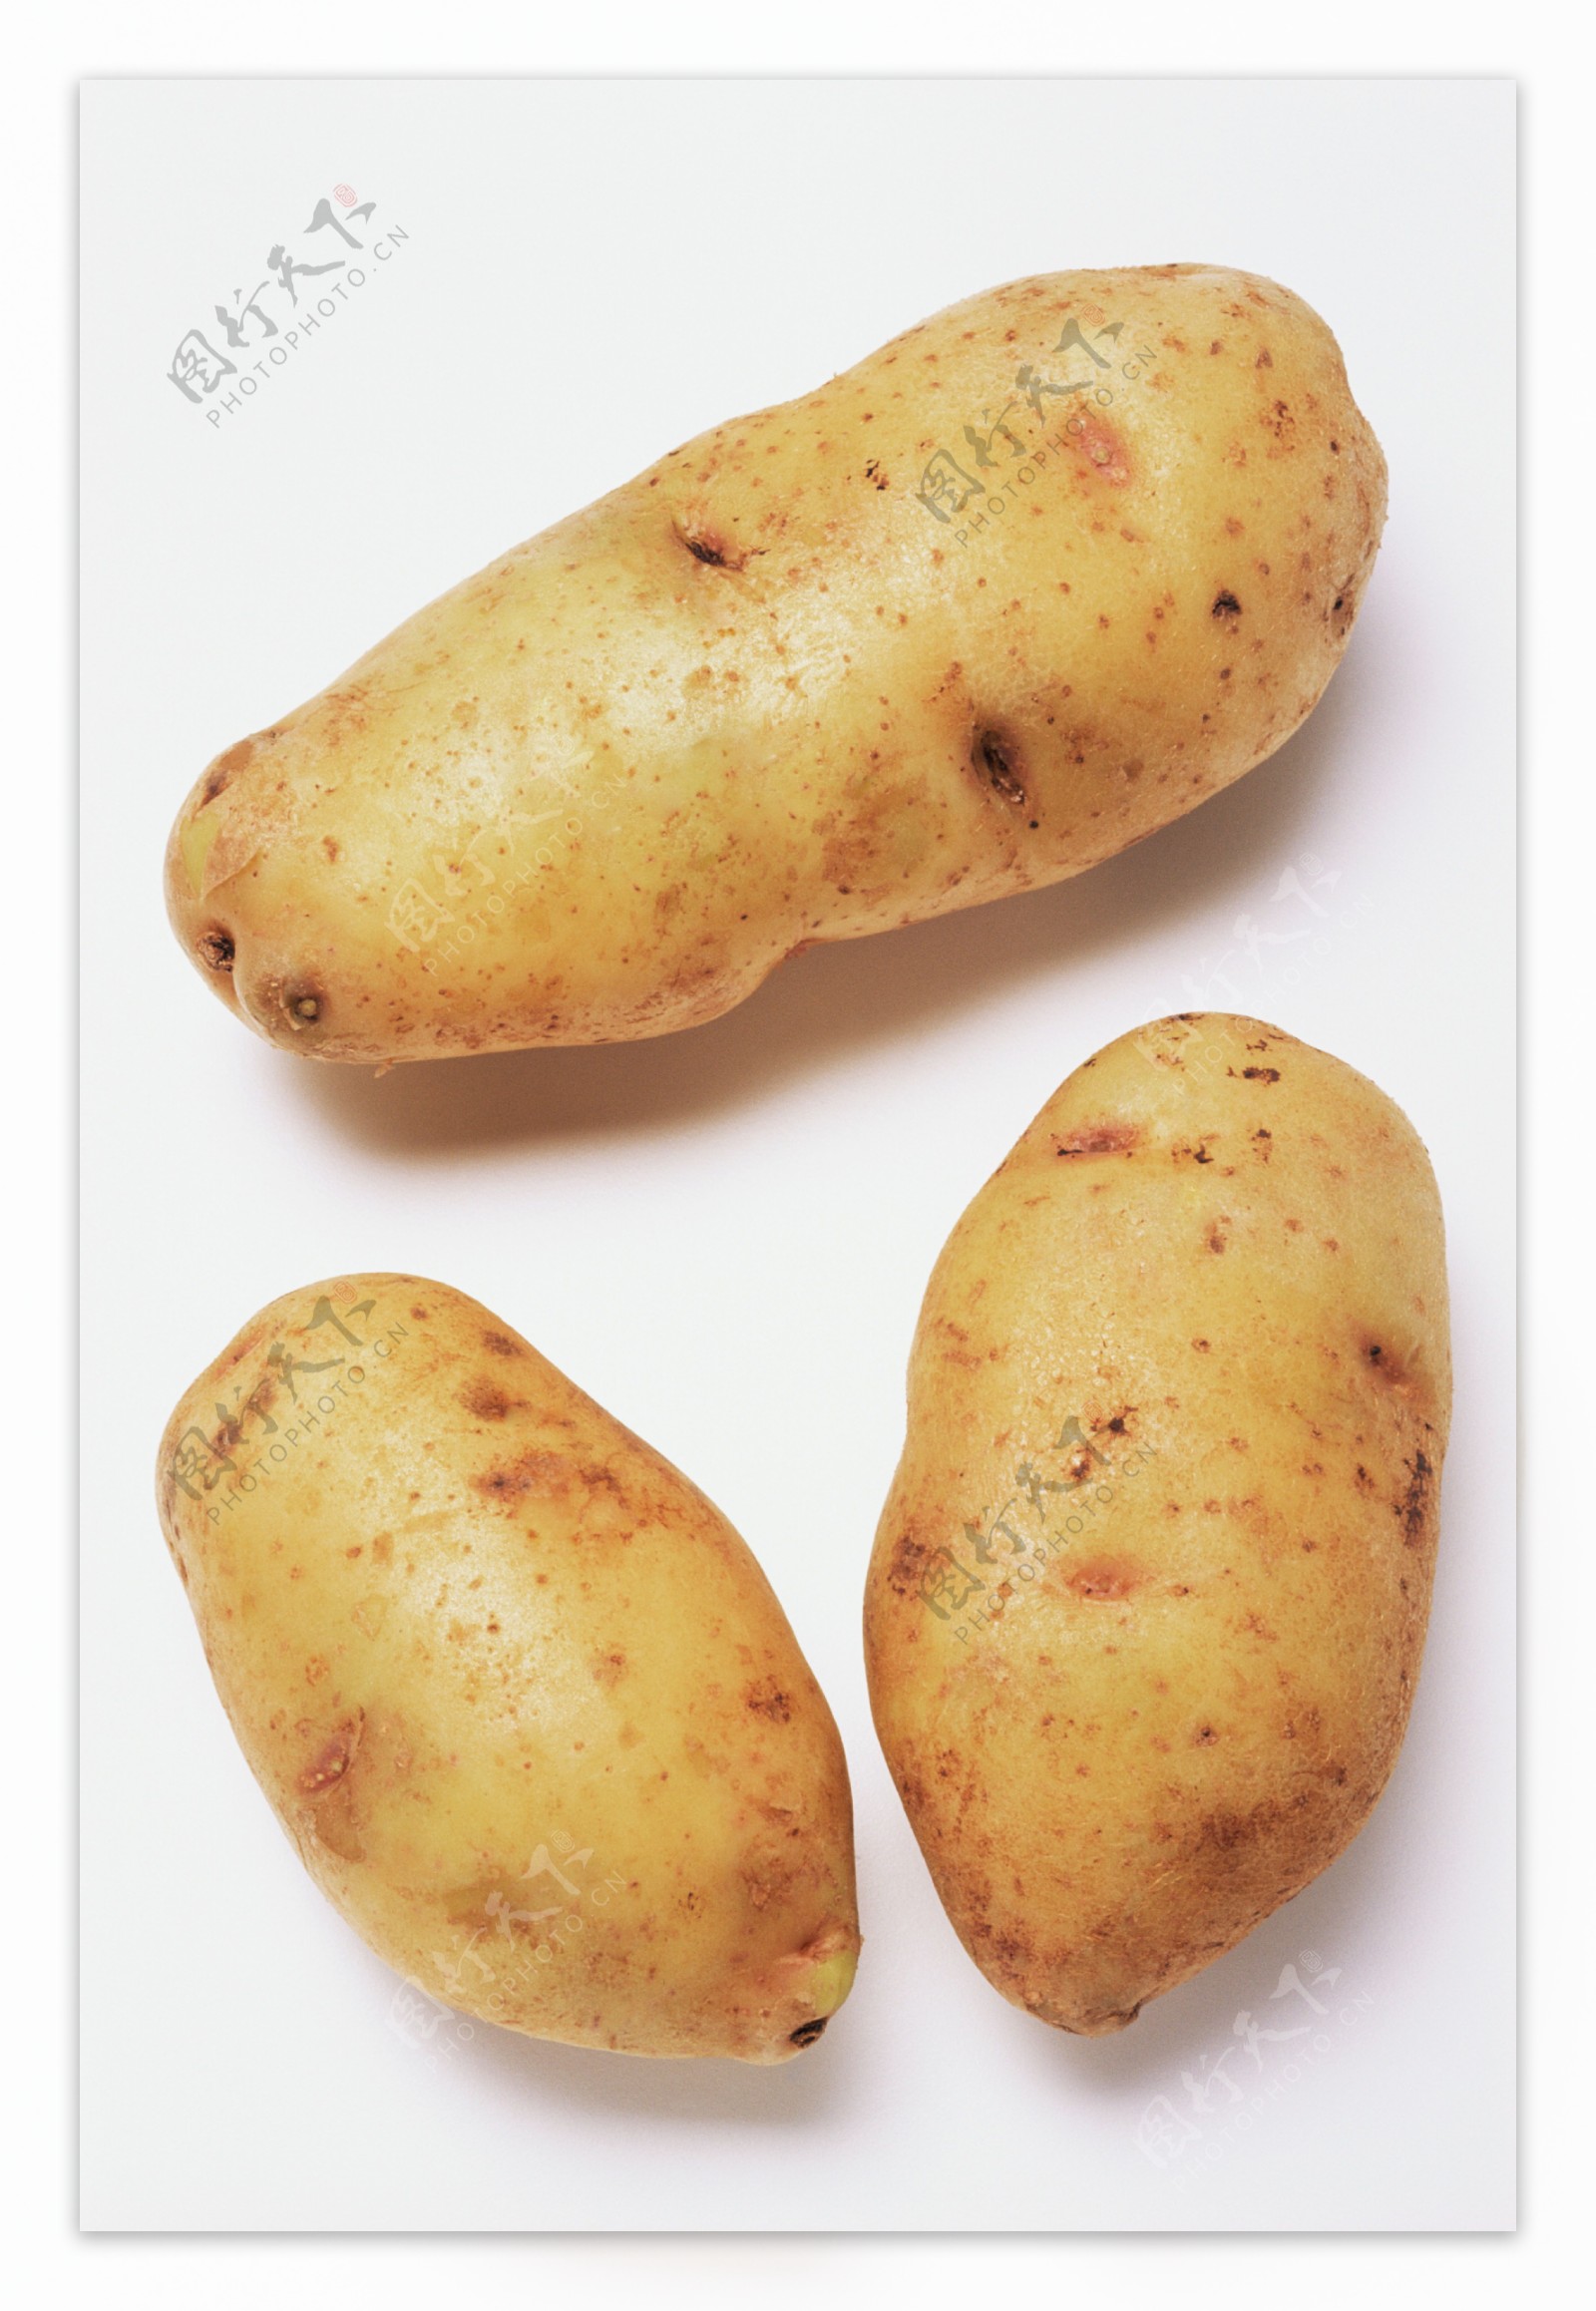 土豆摄影图片